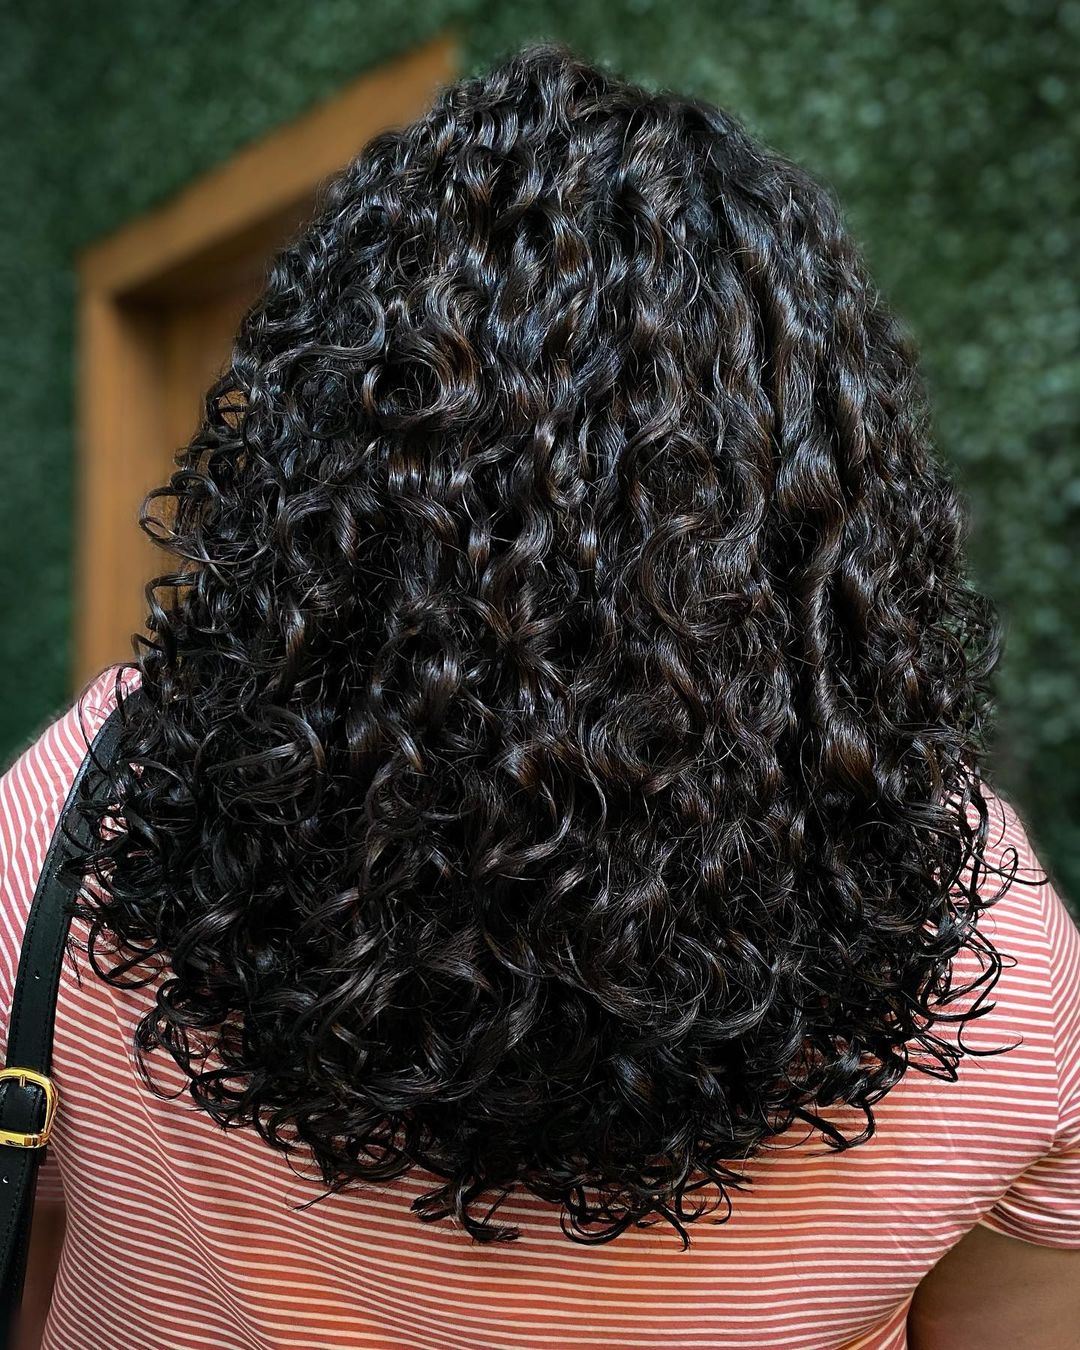 U-shaped rezo cut for long curly hair